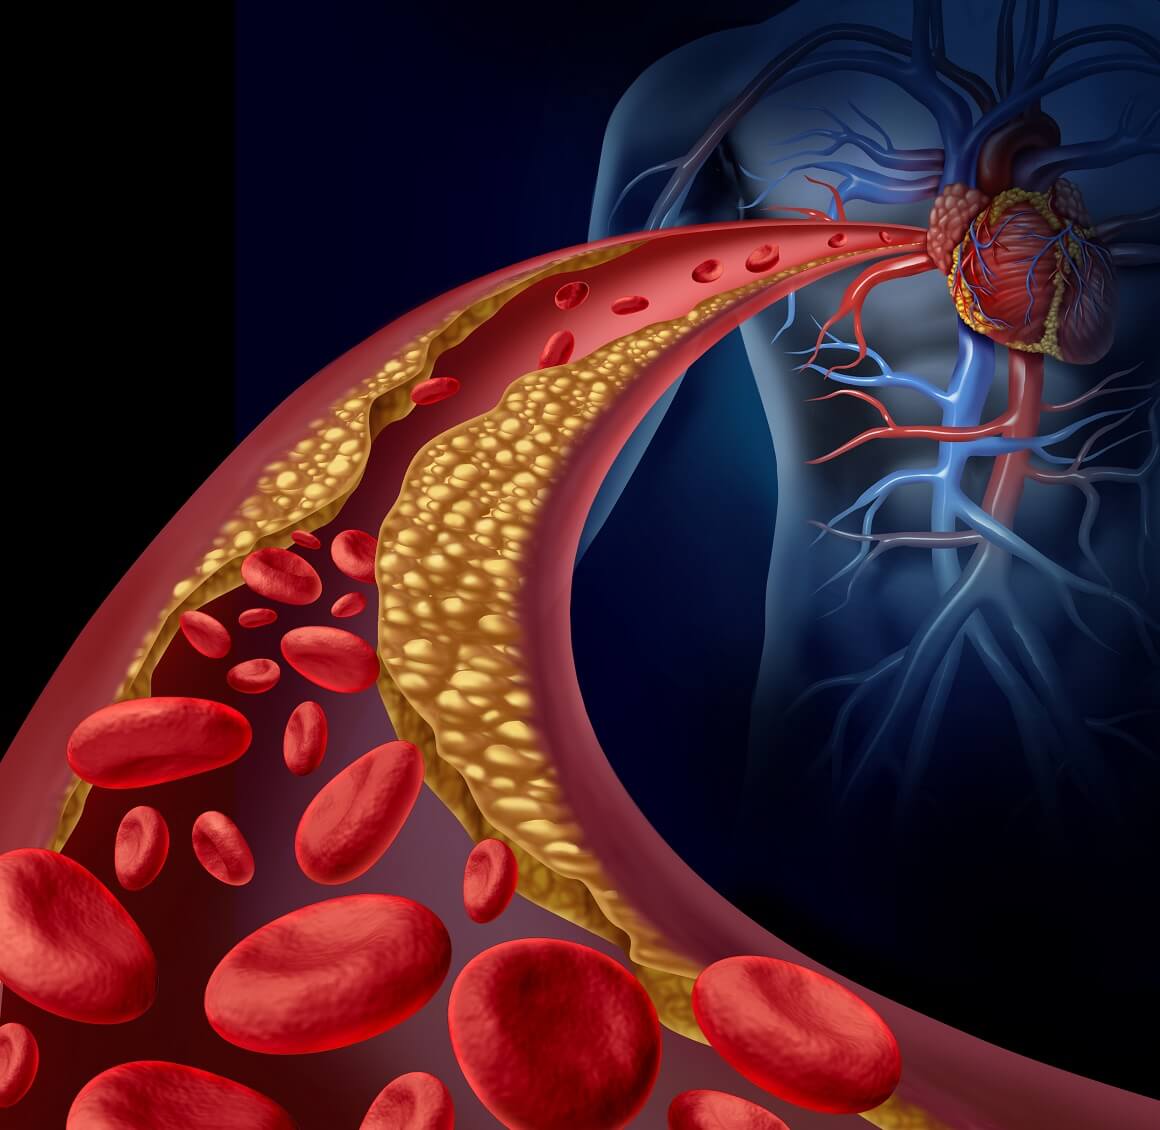 Visoke razine kolesterola lipoproteina niske gustoće (LDL) često dovode do taloženja masnih naslaga u stijenkama krvnih žila